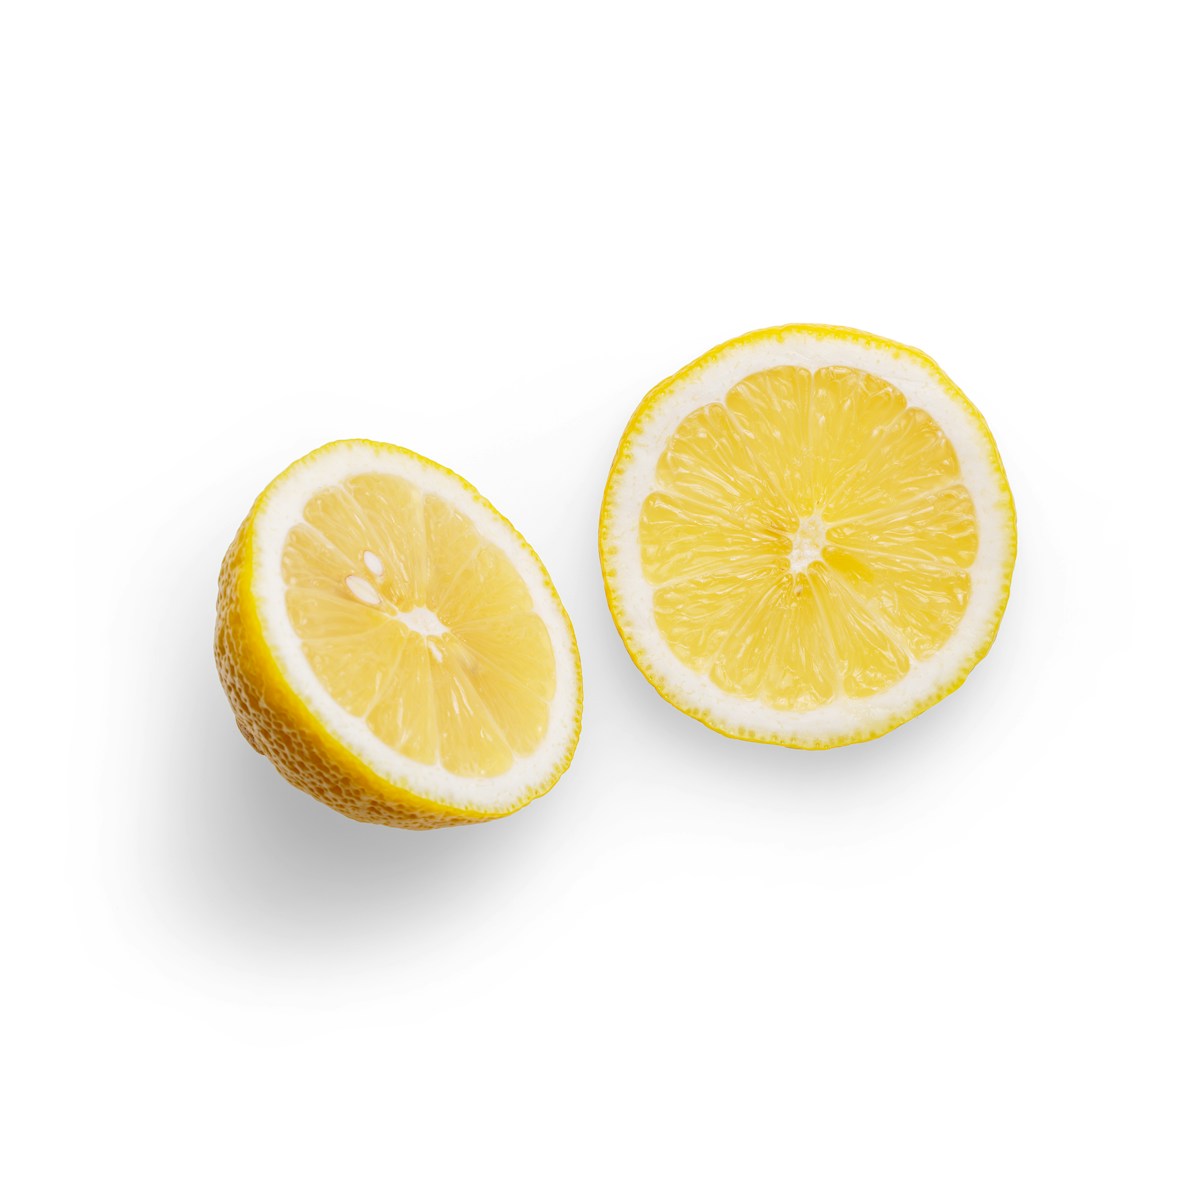 sliced orange fruit on white background